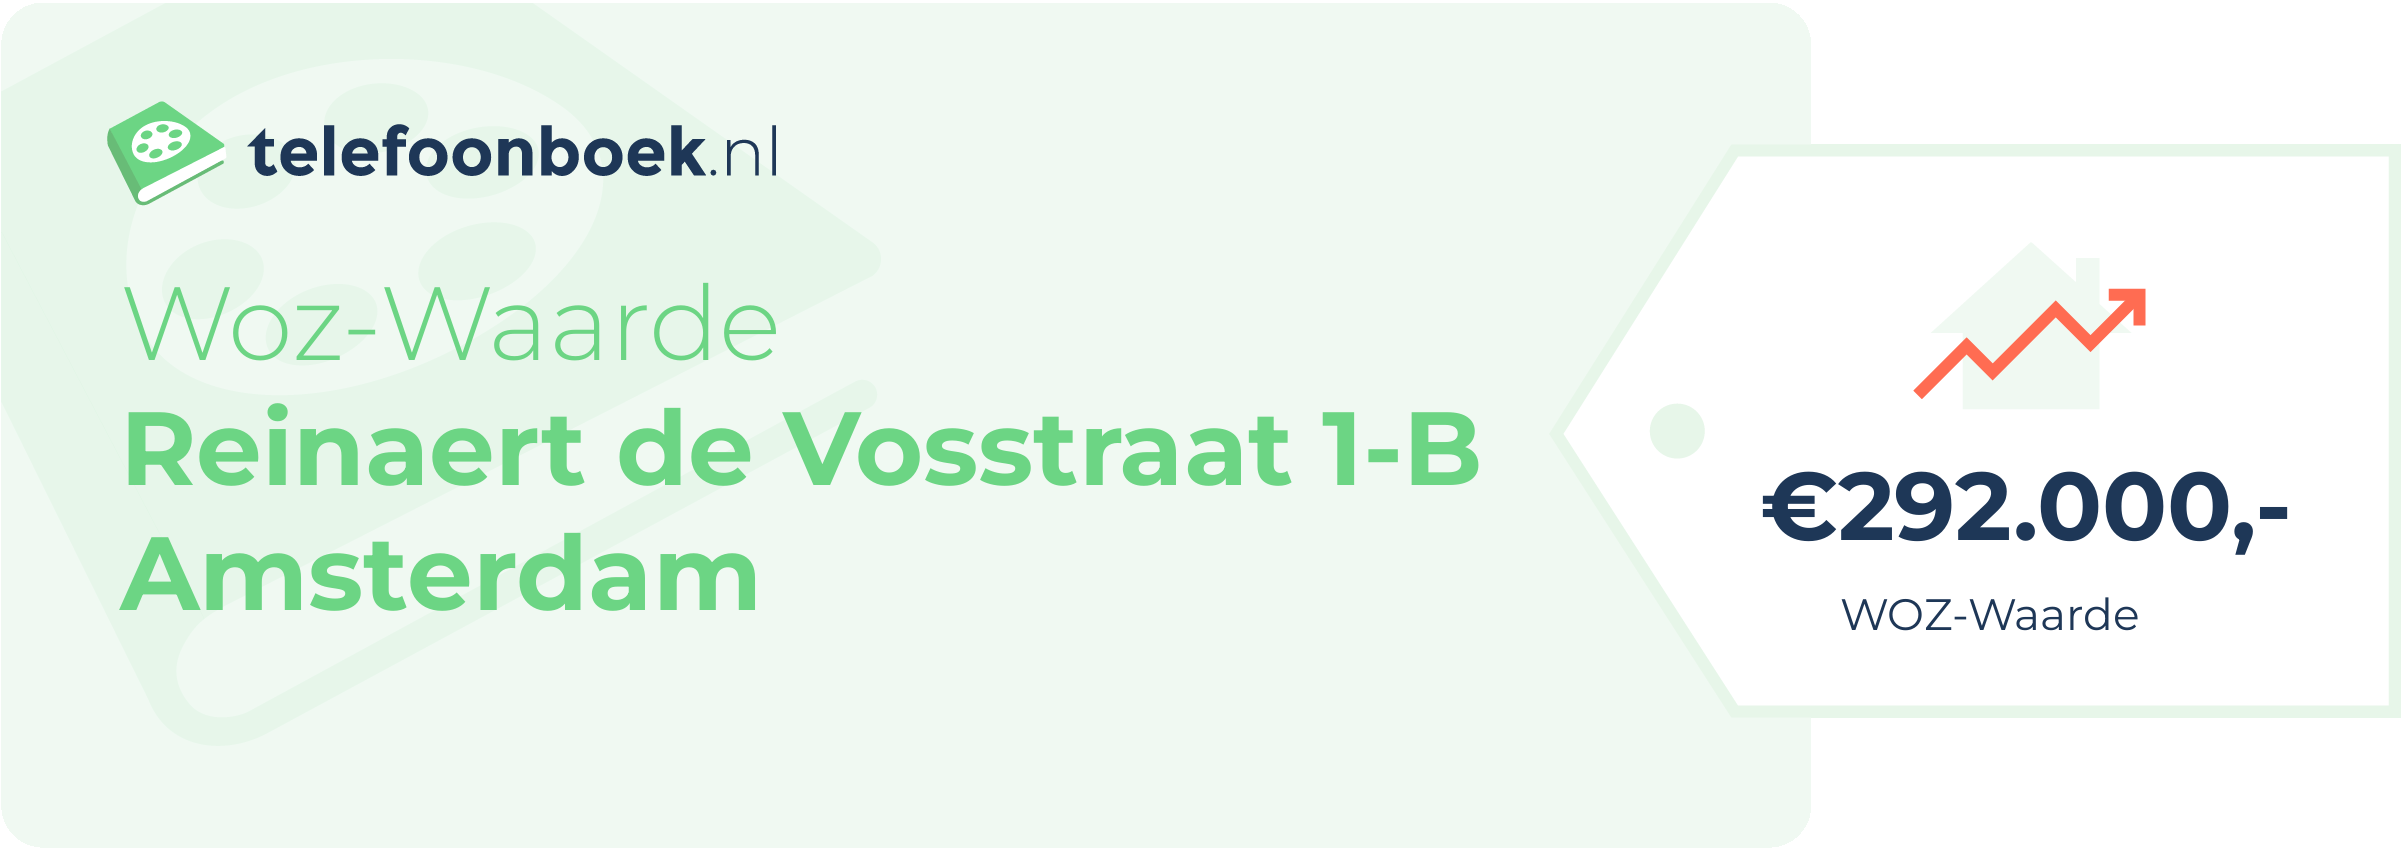 WOZ-waarde Reinaert De Vosstraat 1-B Amsterdam